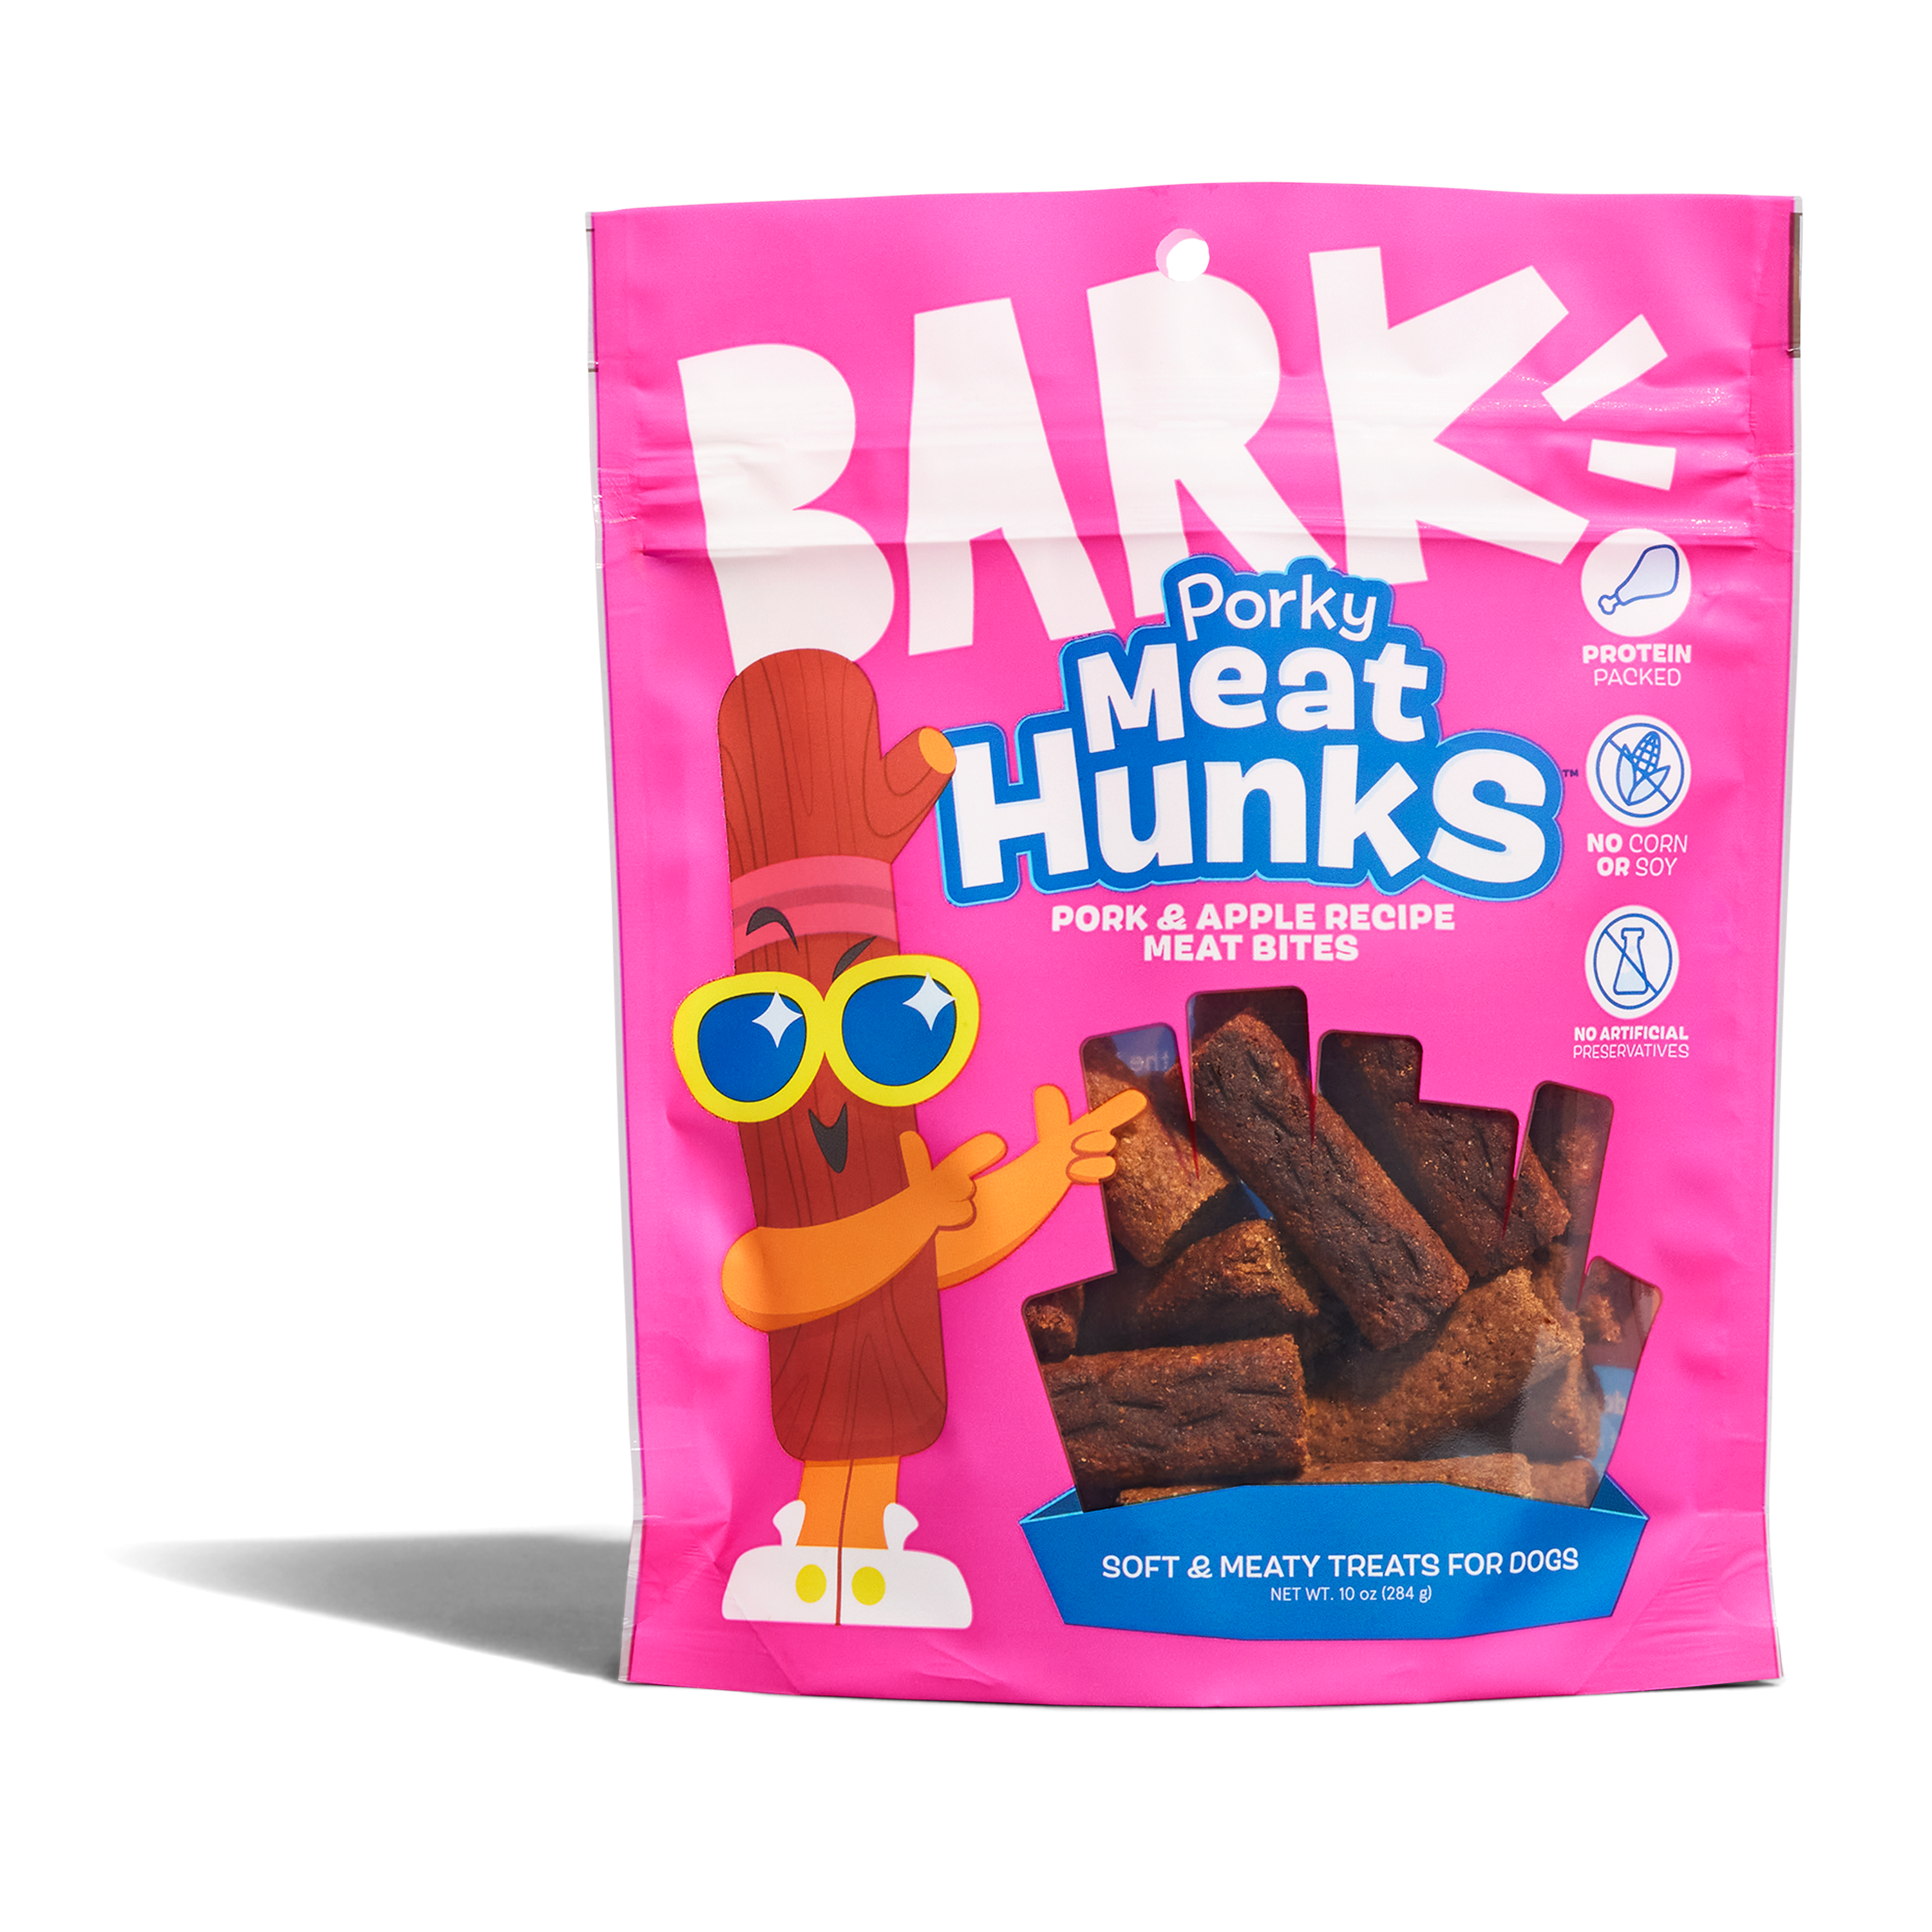 Porky Meat Hunks - Pork Recipe Meat Bites